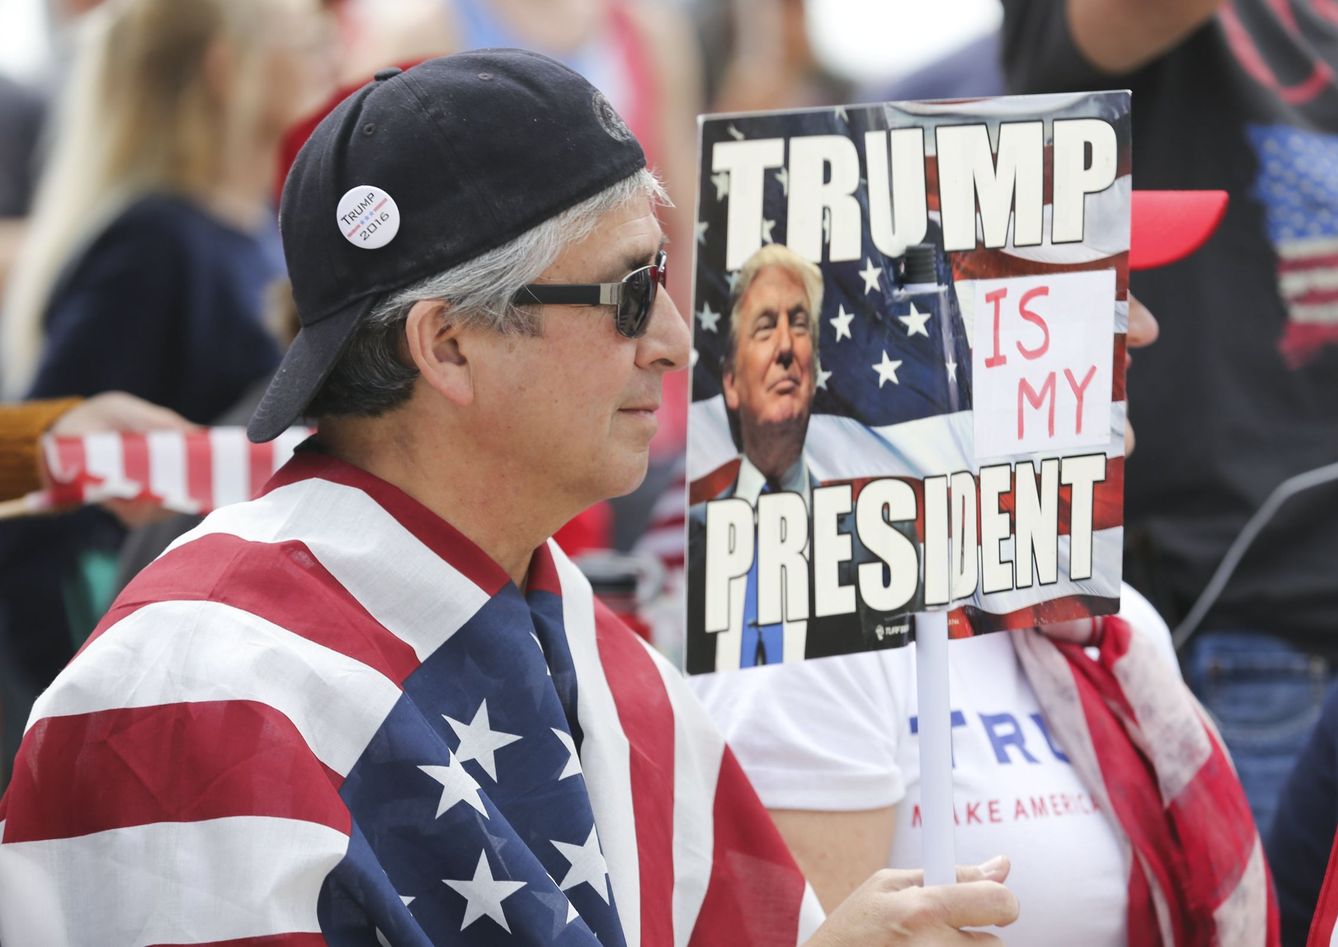 Partidarios de Donald Trump durante una manifestación de apoyo en California, en marzo de 2017. (Reuters)